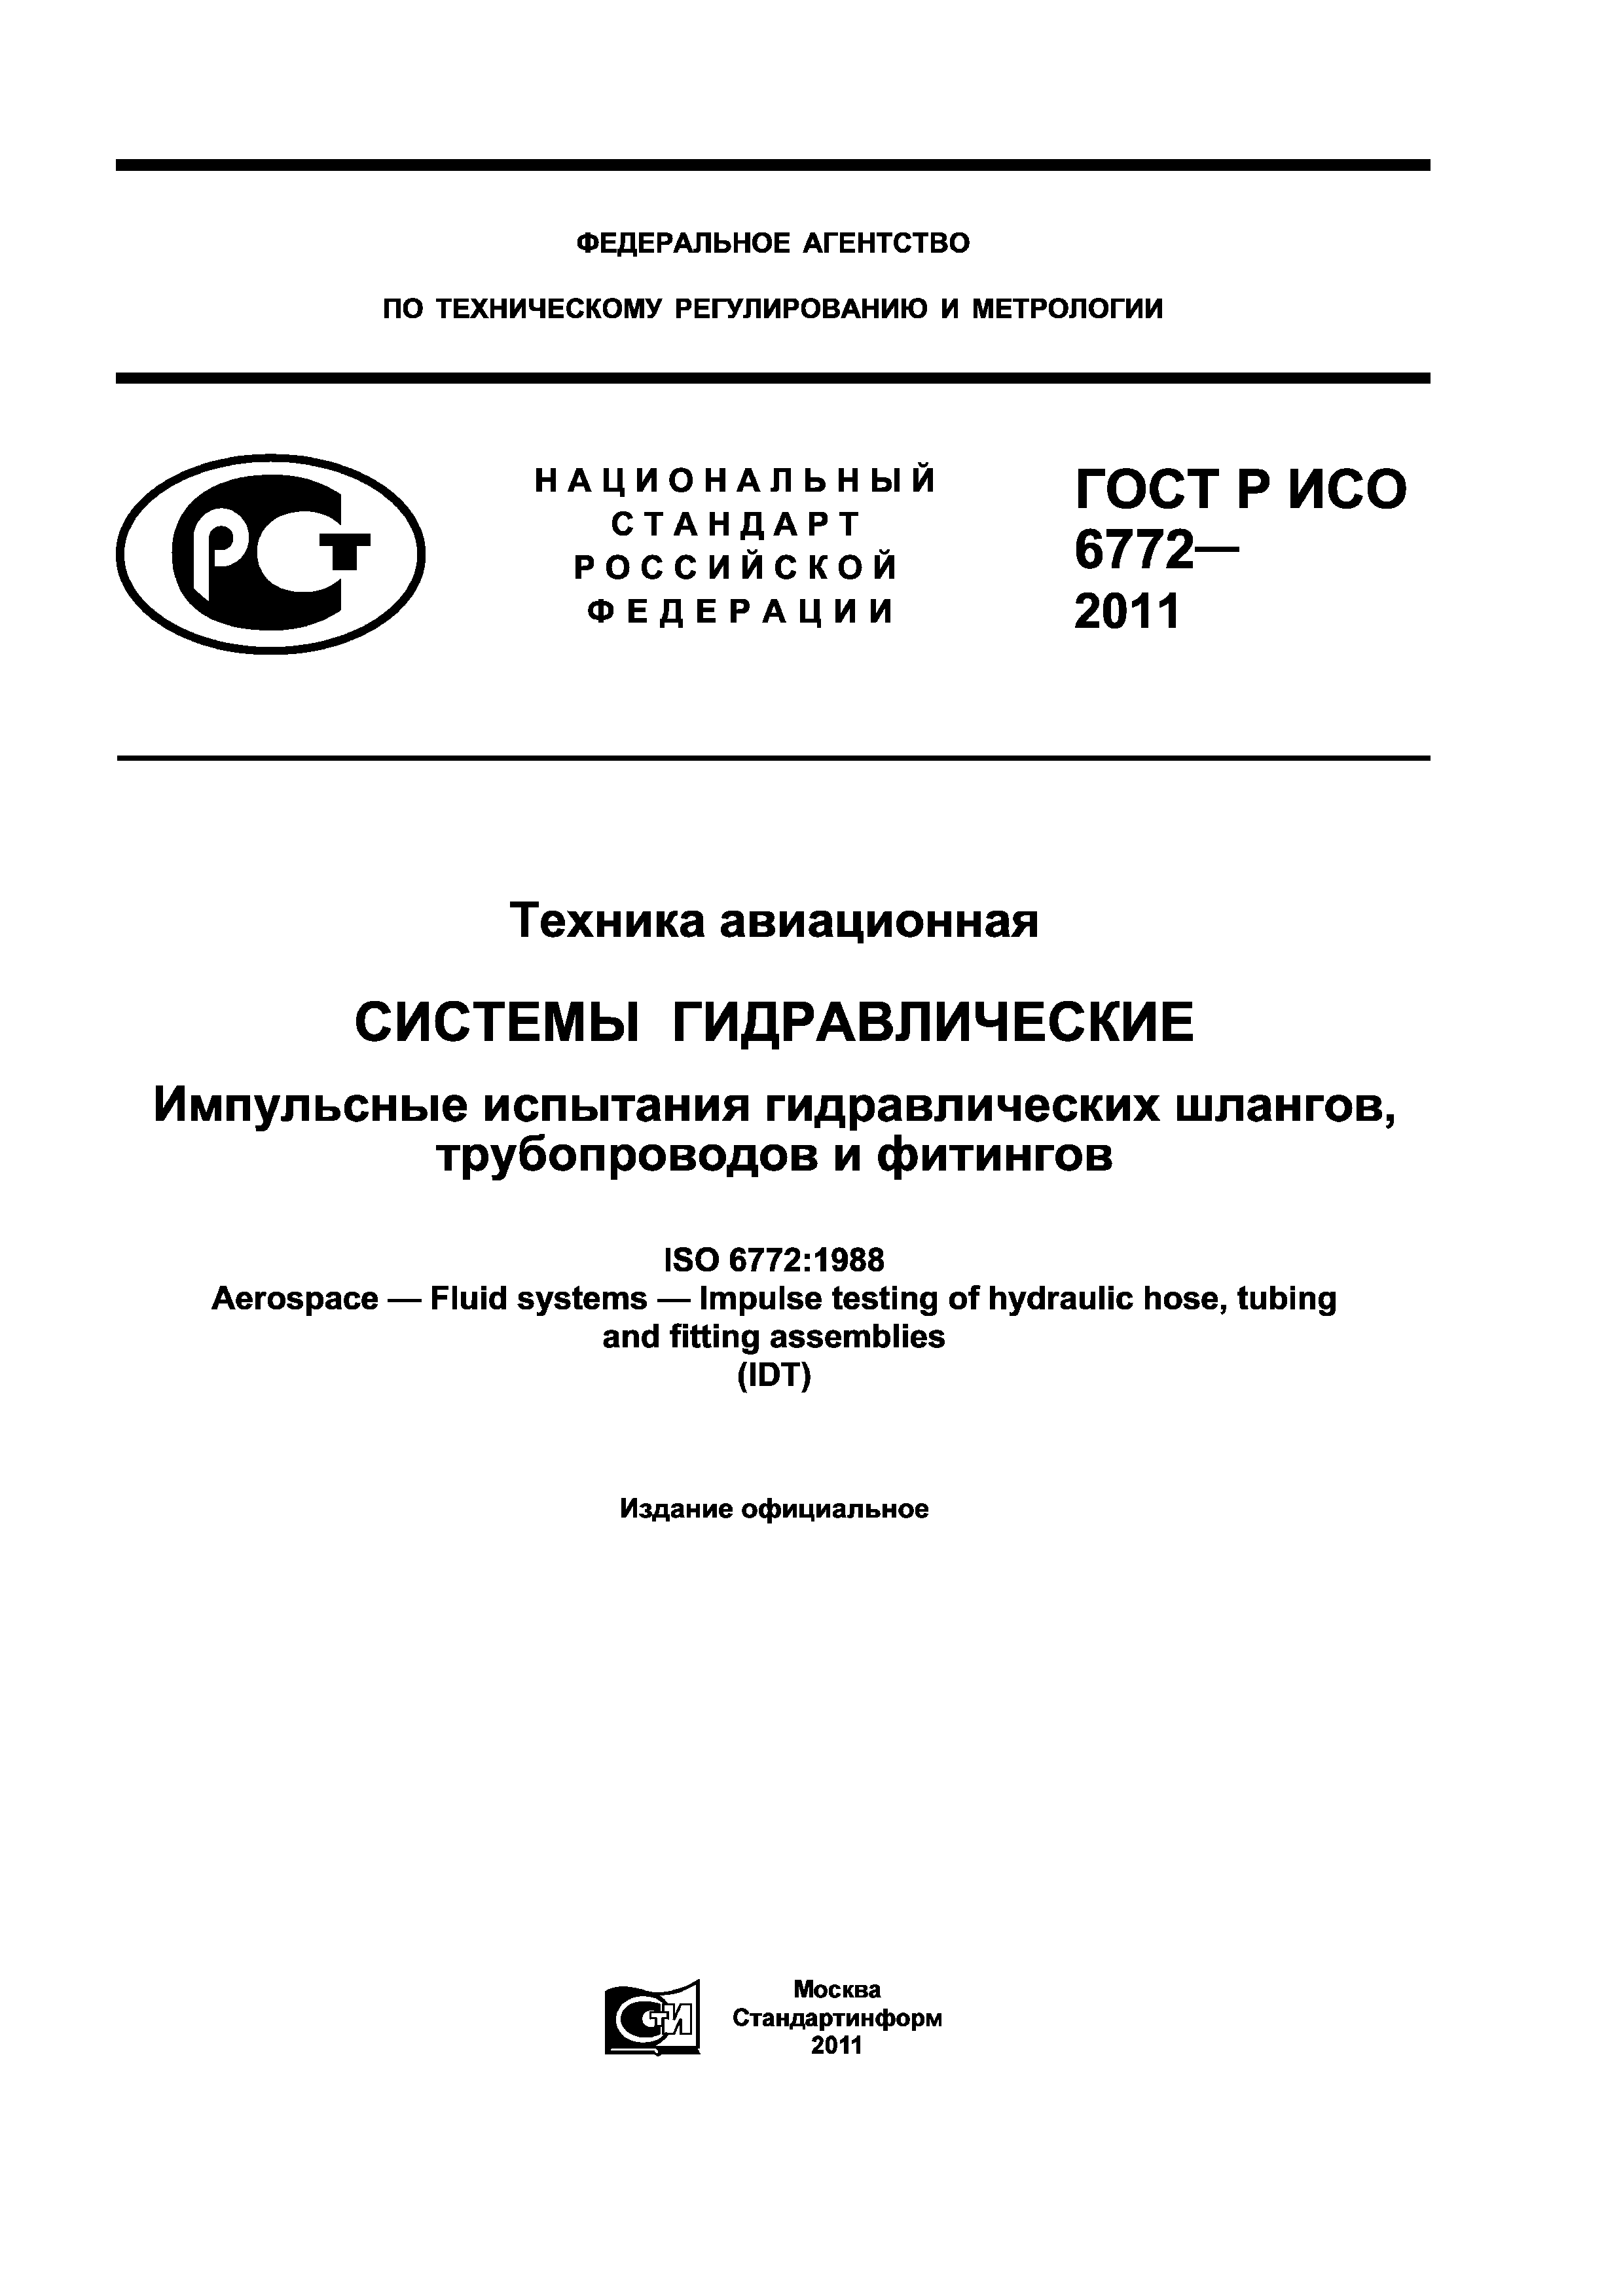 ГОСТ Р ИСО 6772-2011